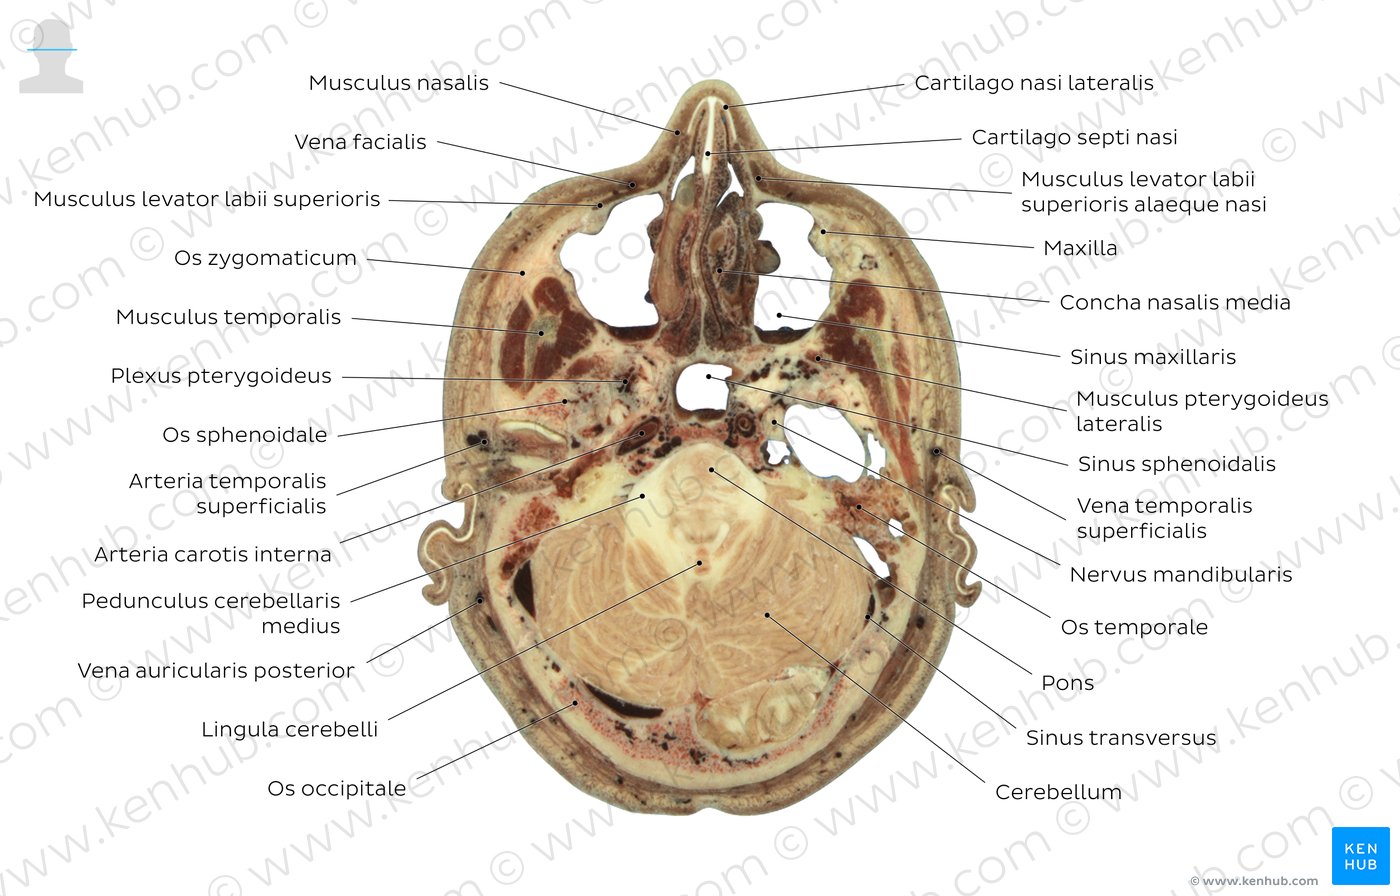 Schnittbild auf Höhe des Sinus maxillaris